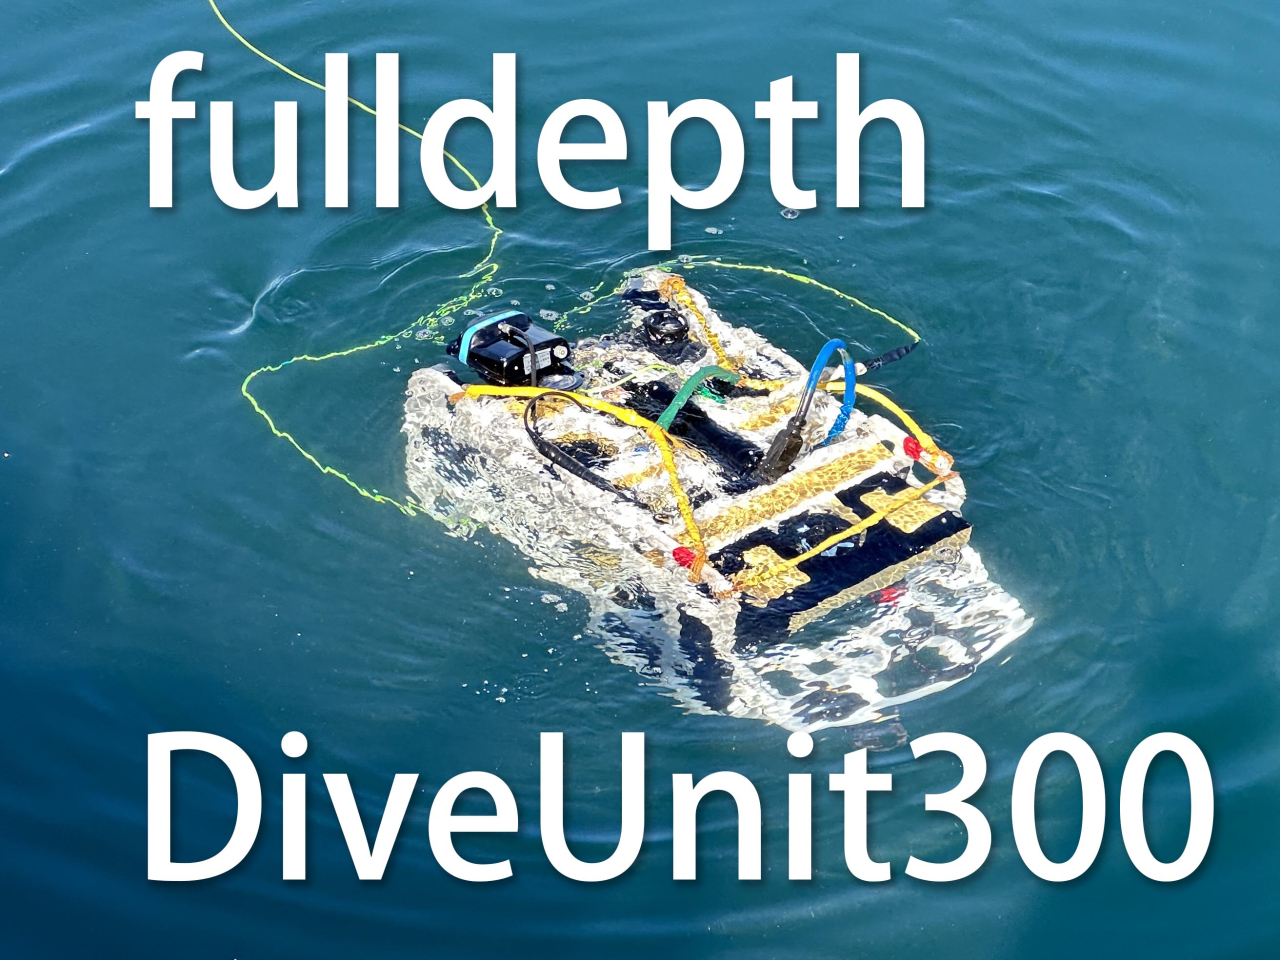 fulldepth DiveUnit300導入についてのブログ記事を更新しました。